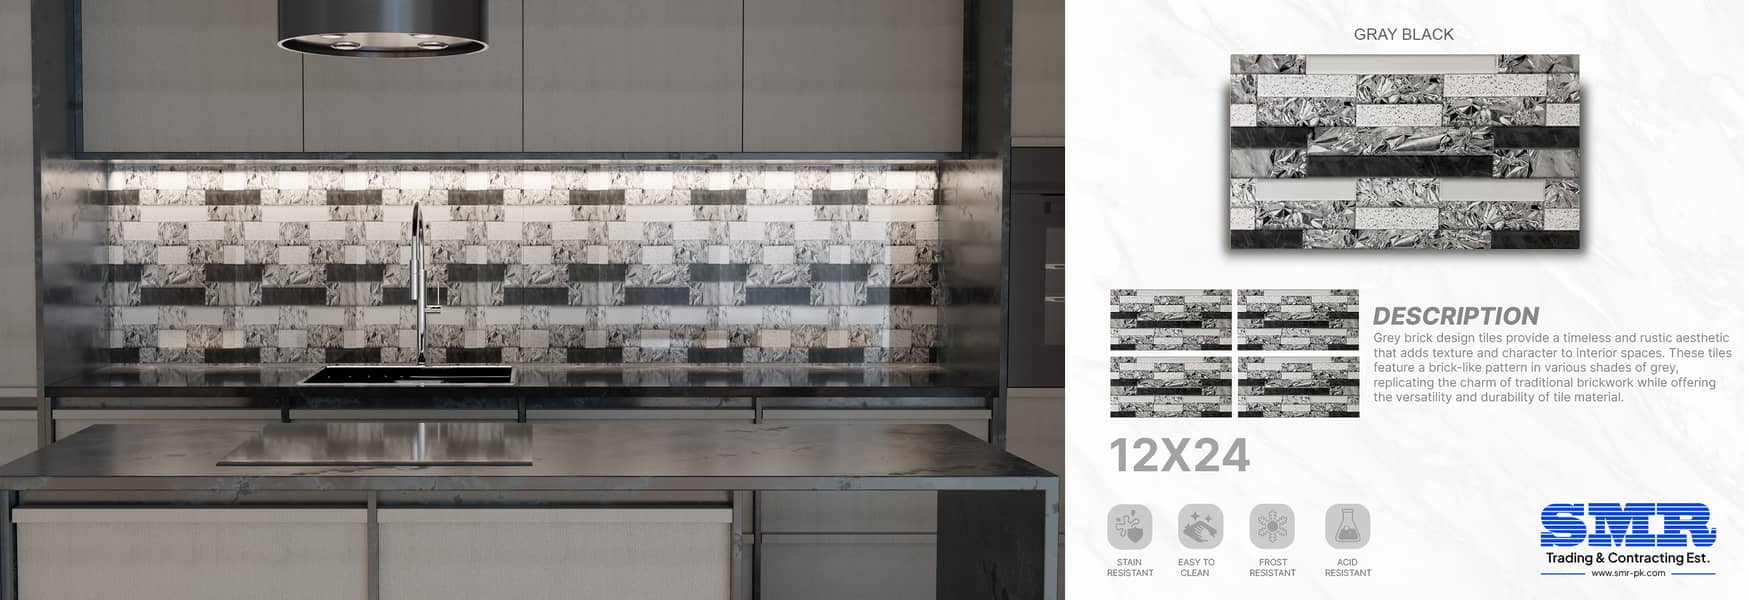 12x24 kitchen tiles 9